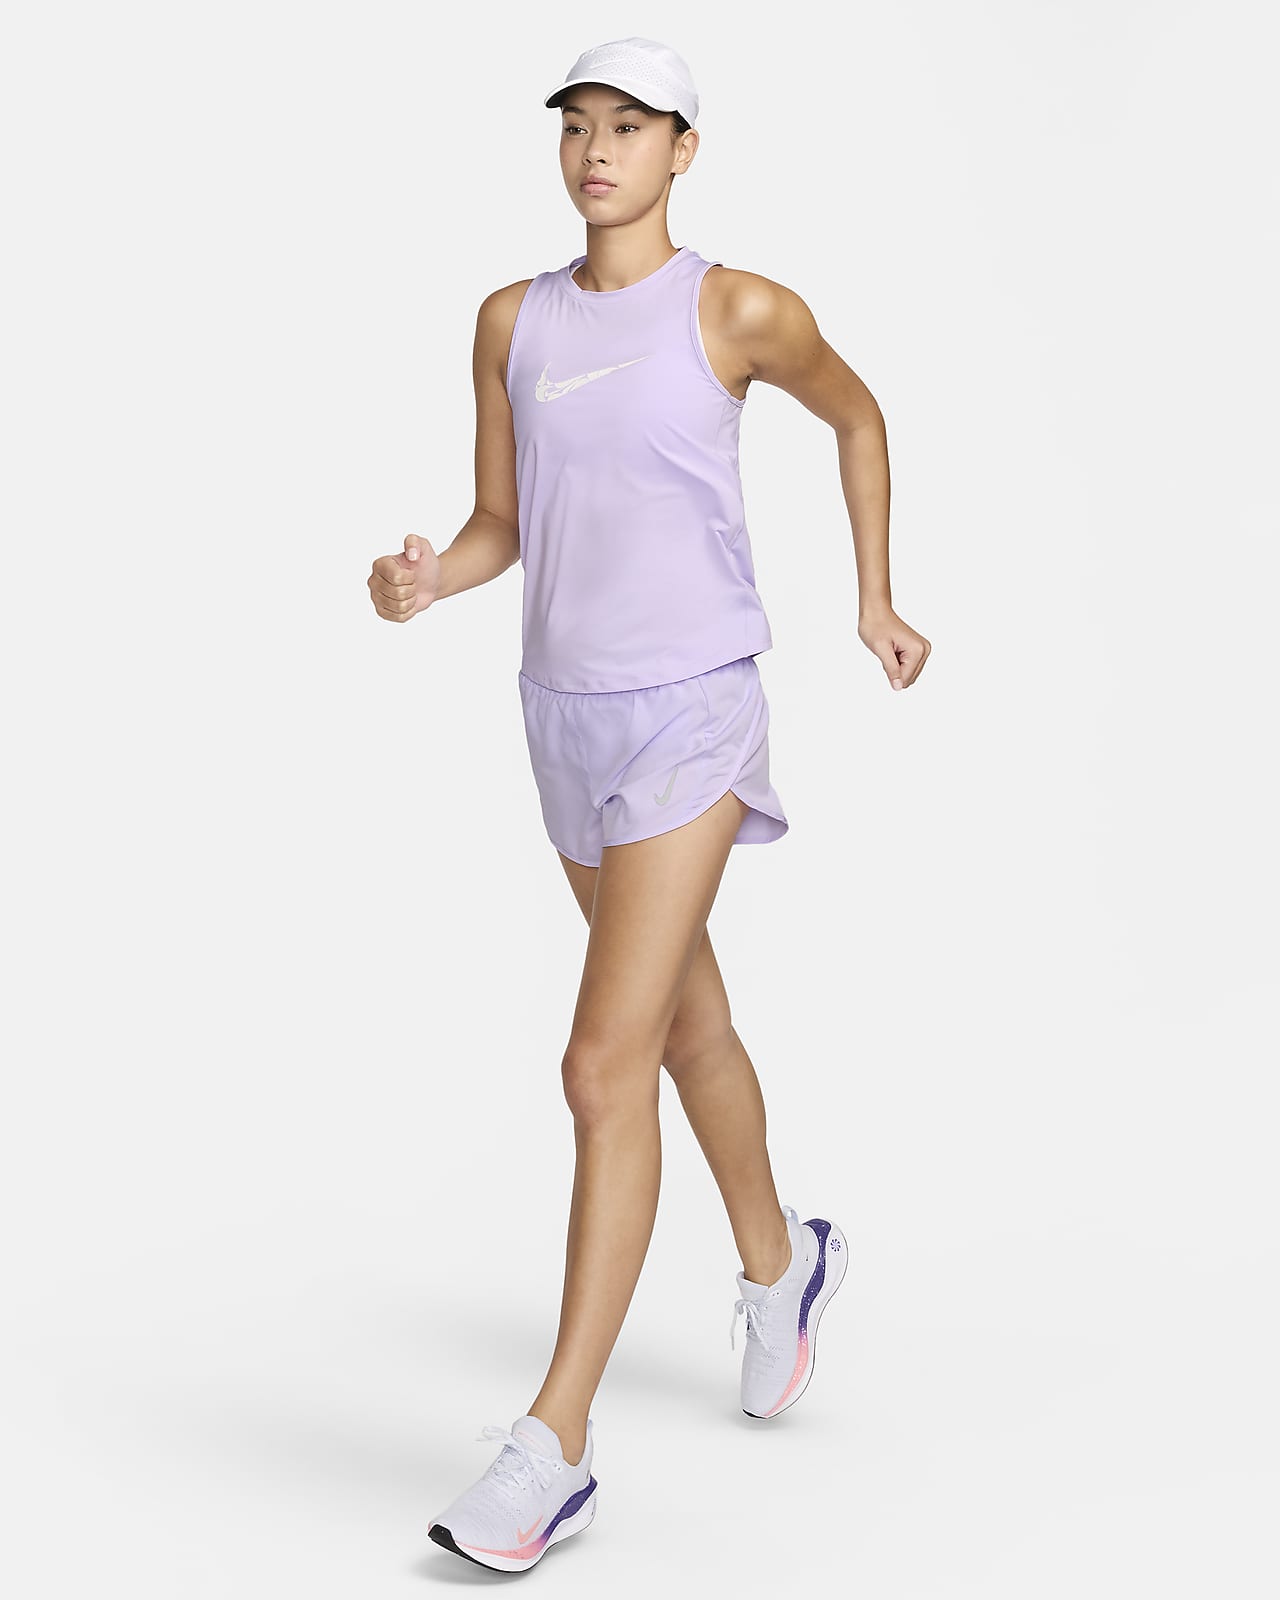 Nike Dri-fit lot of three Shorts, Womens Size Small